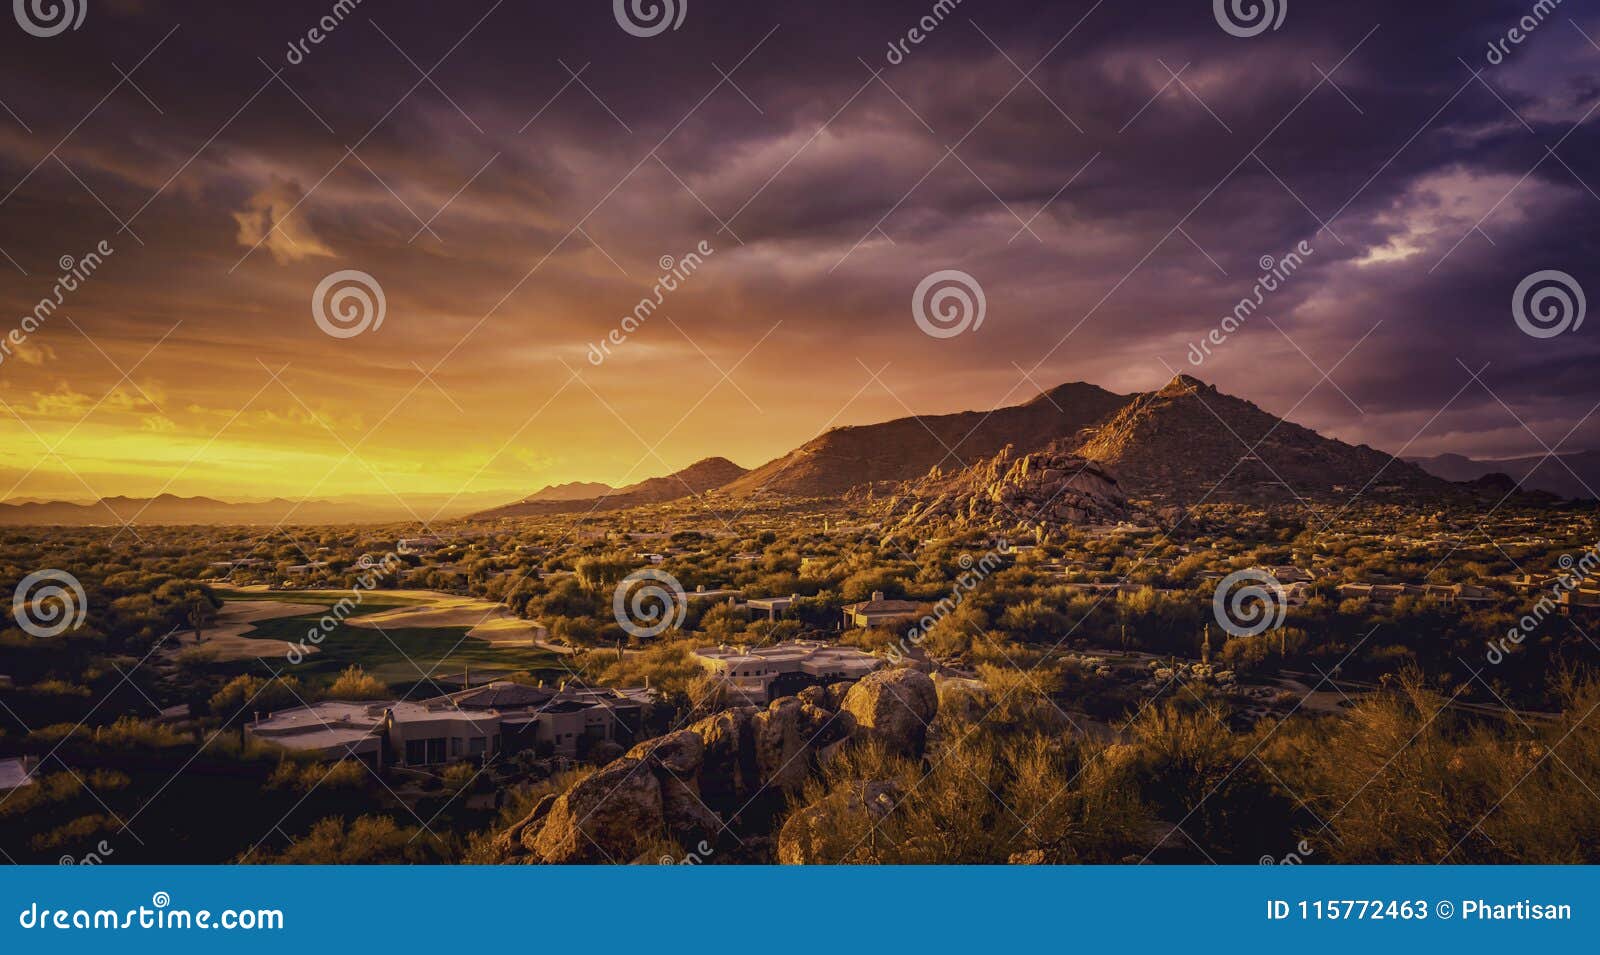 scottsdale arizona desert landscape,usa